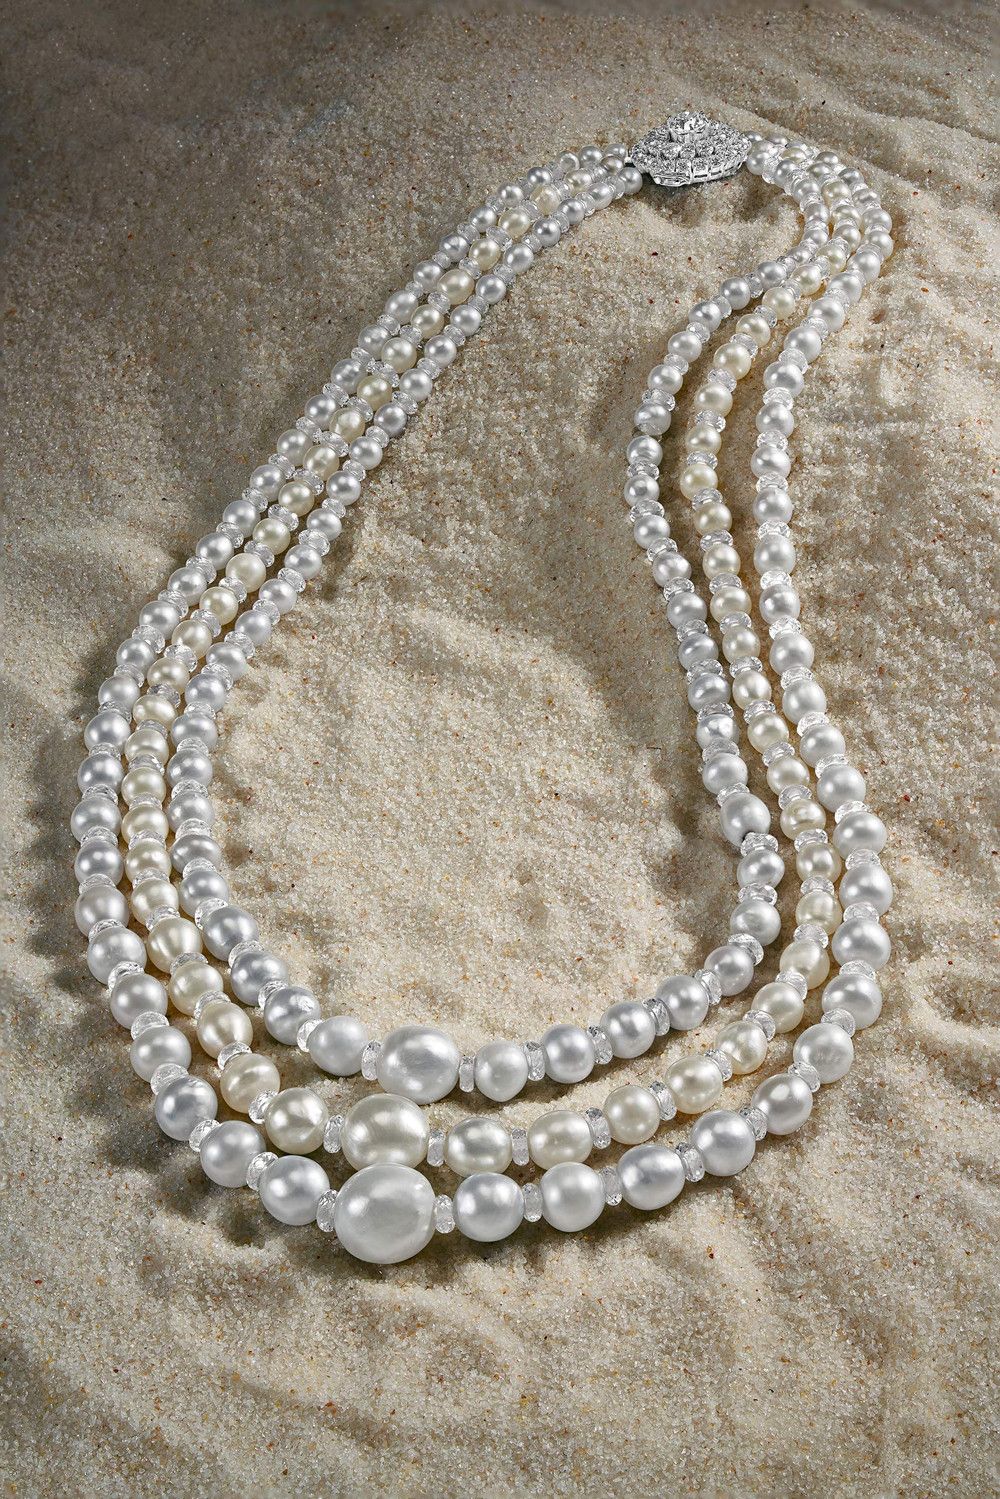 Ожерелье со 181 морской жемчужиной и бриллиантами старинной огранки. Фото: AstaGuru